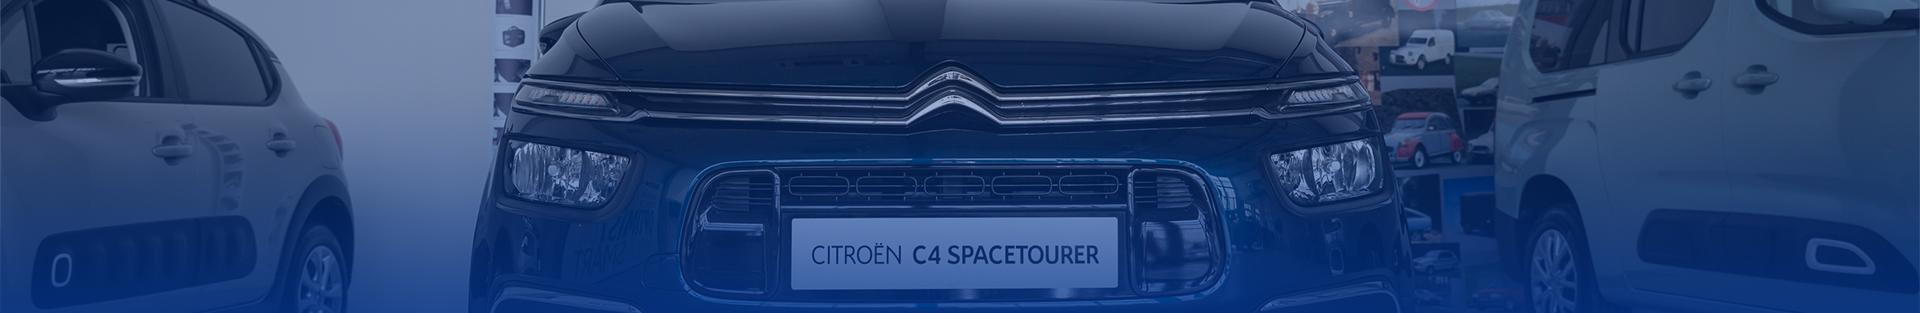 Citroën C4 Spacetourervůz s dynamickým charakterem